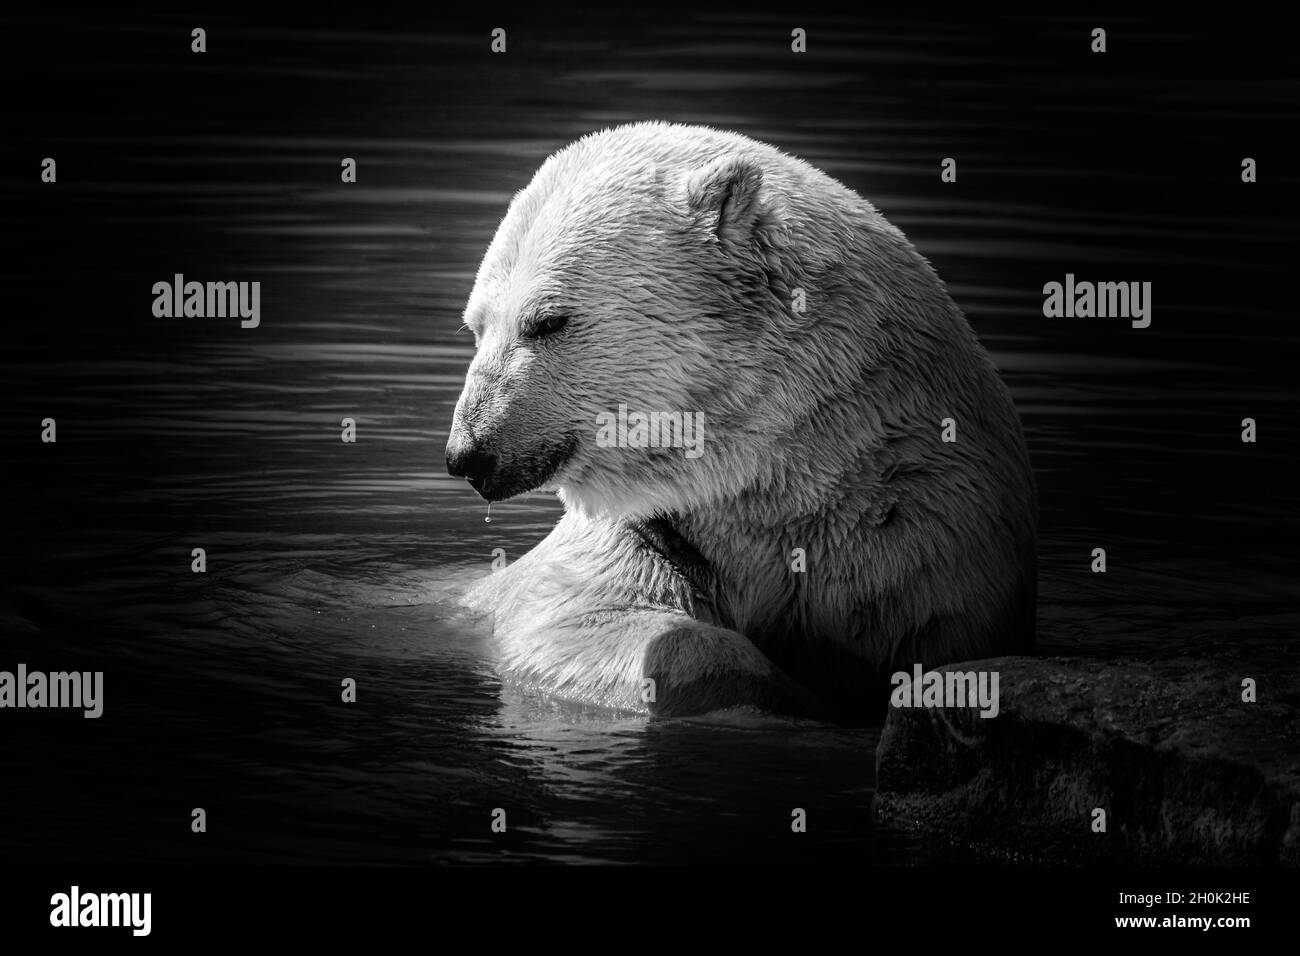 Foto in bianco e nero oscura e moody di un orso polare che si crogiola al sole in un lago appoggiato su una roccia Foto Stock